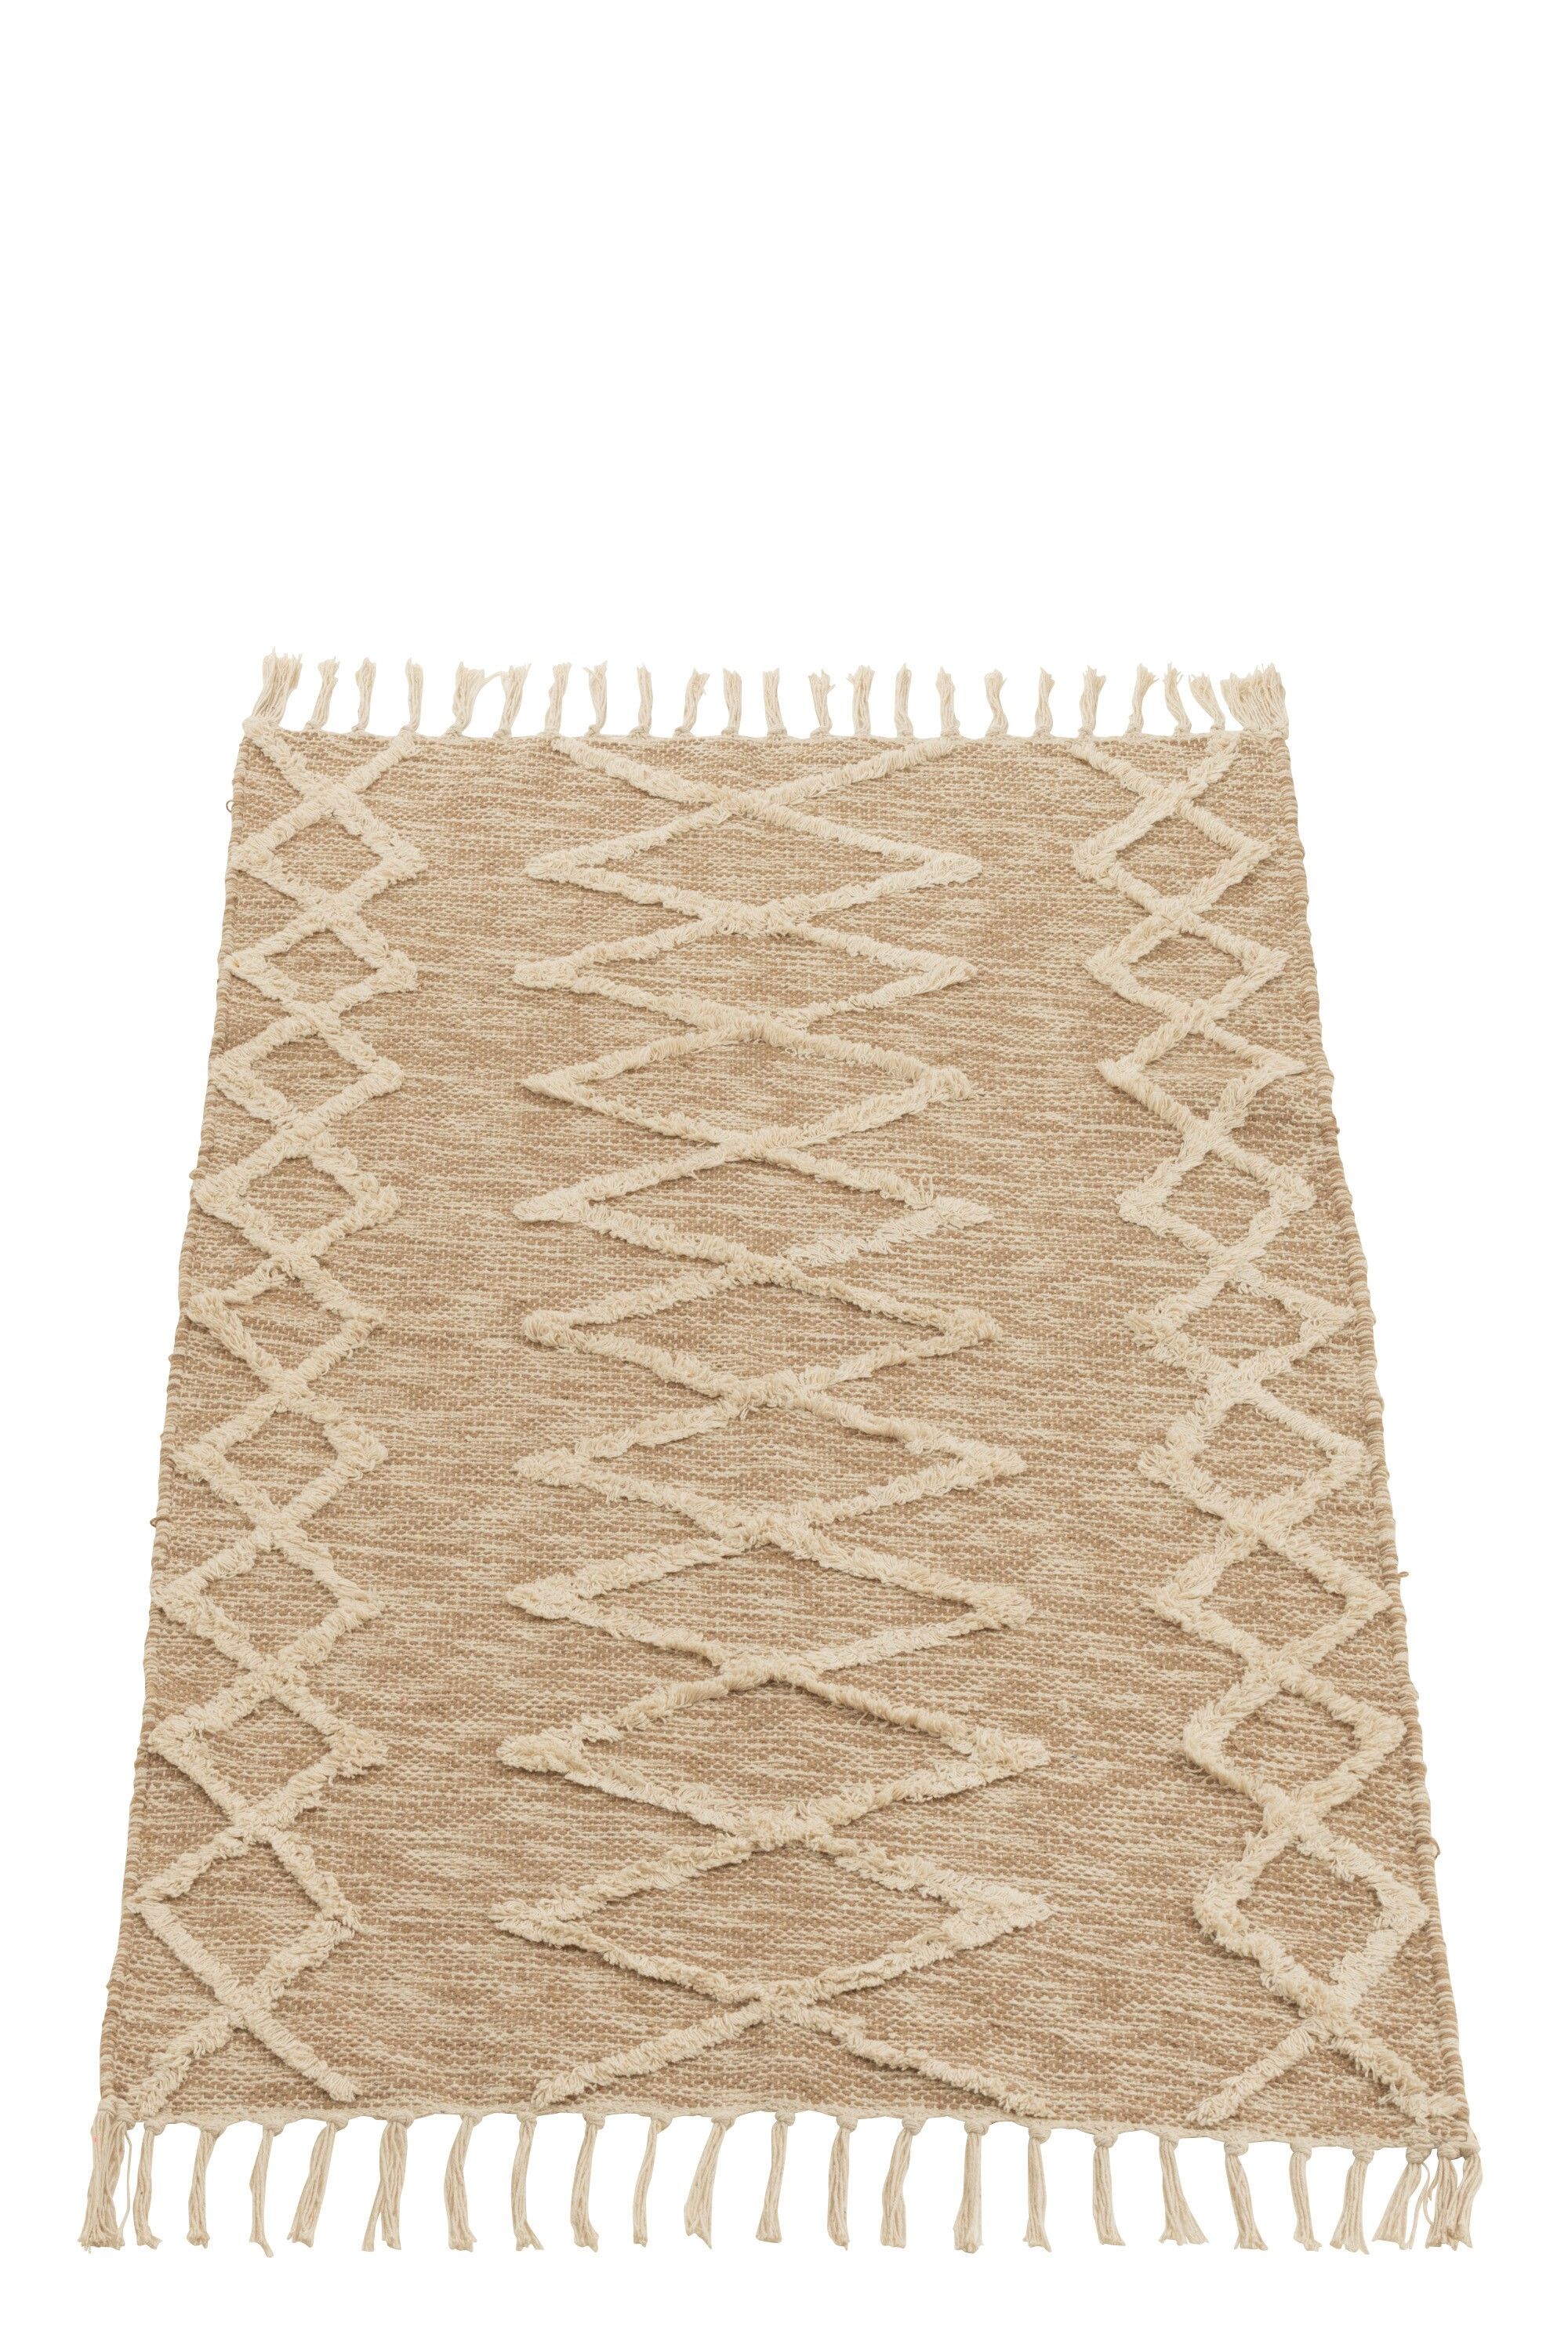 Béžový bavlněný kobereček Zita s třásněmi - 105*61 cm J-Line by Jolipa - LaHome - vintage dekorace